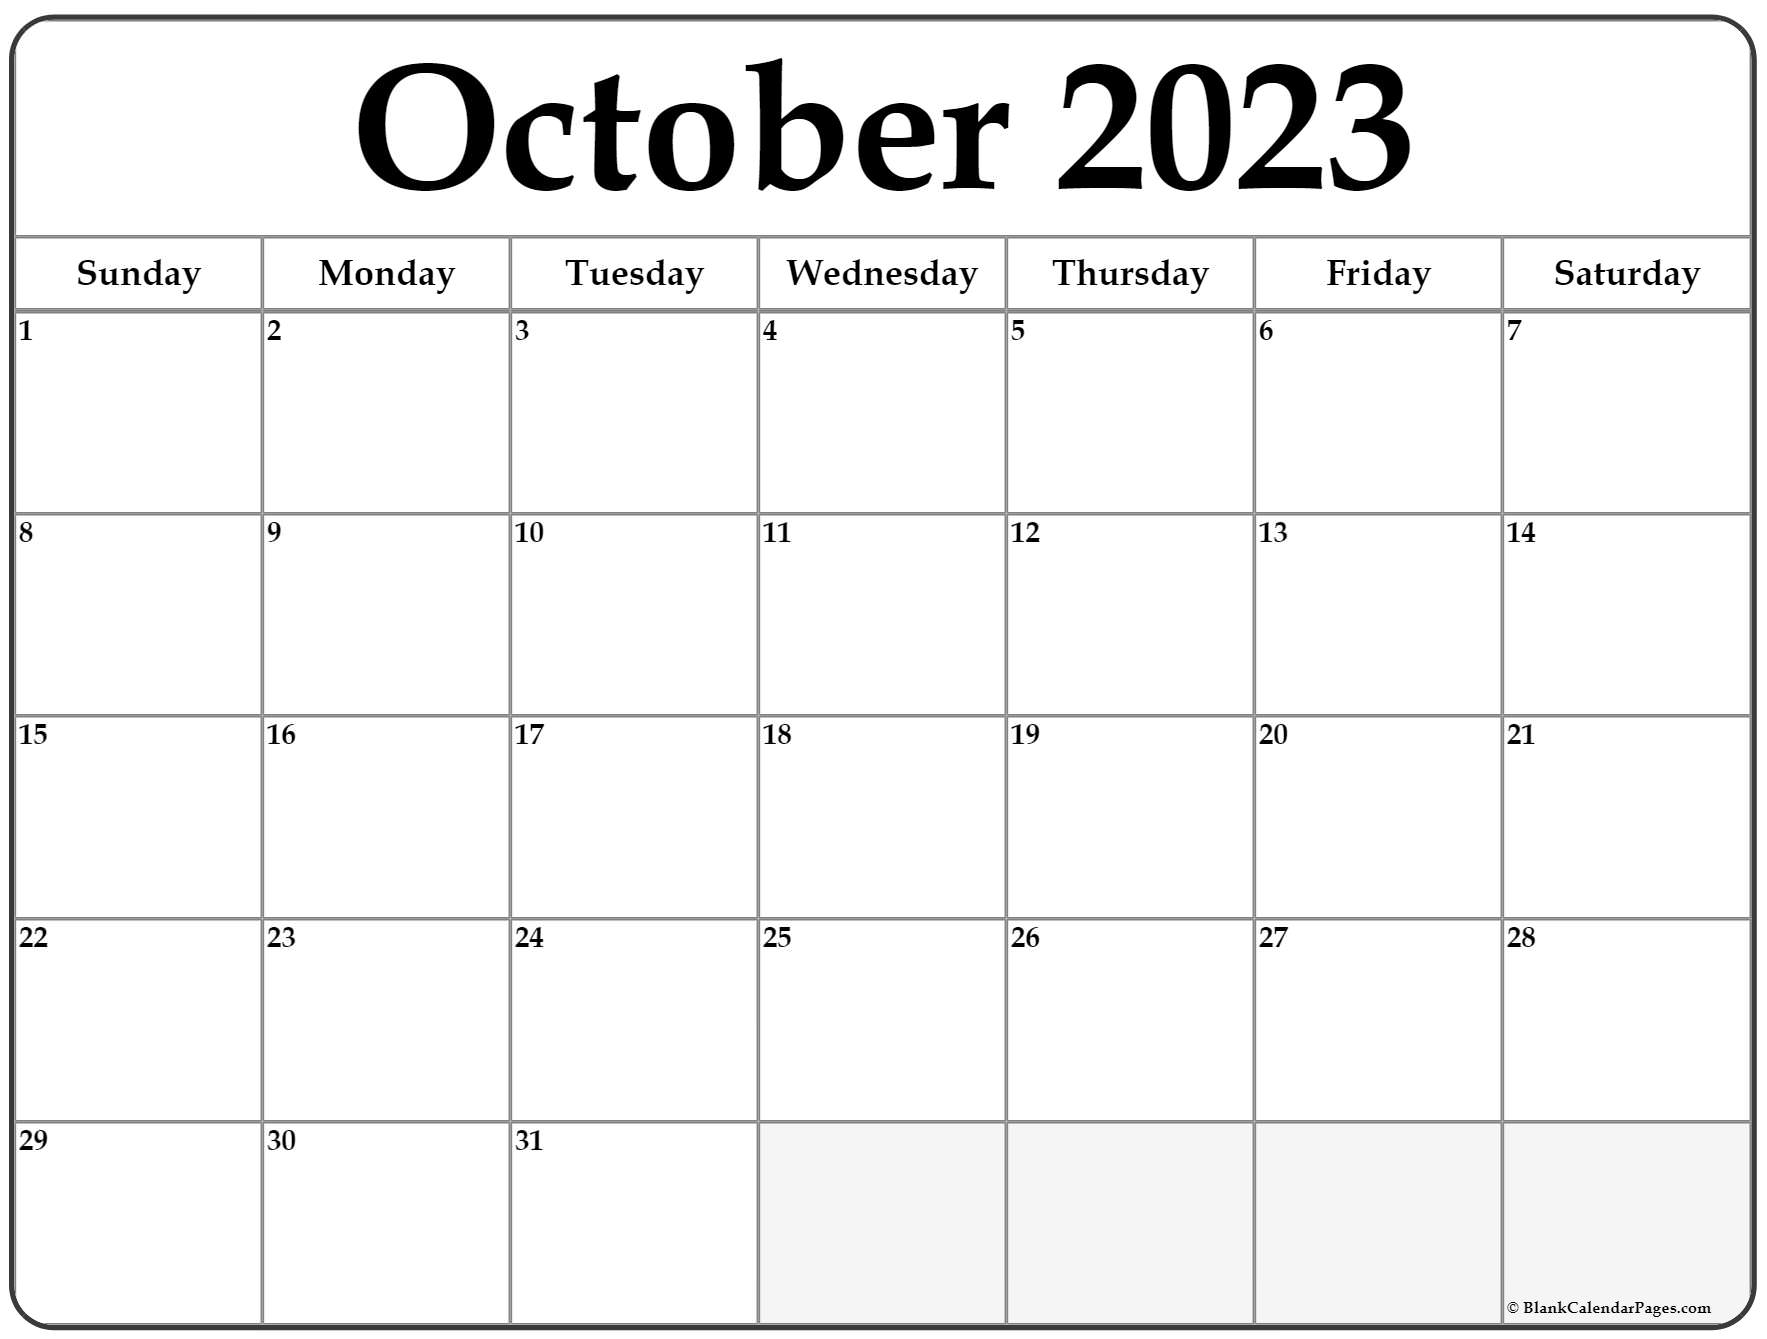 october-2023-calendar-free-printable-calendar